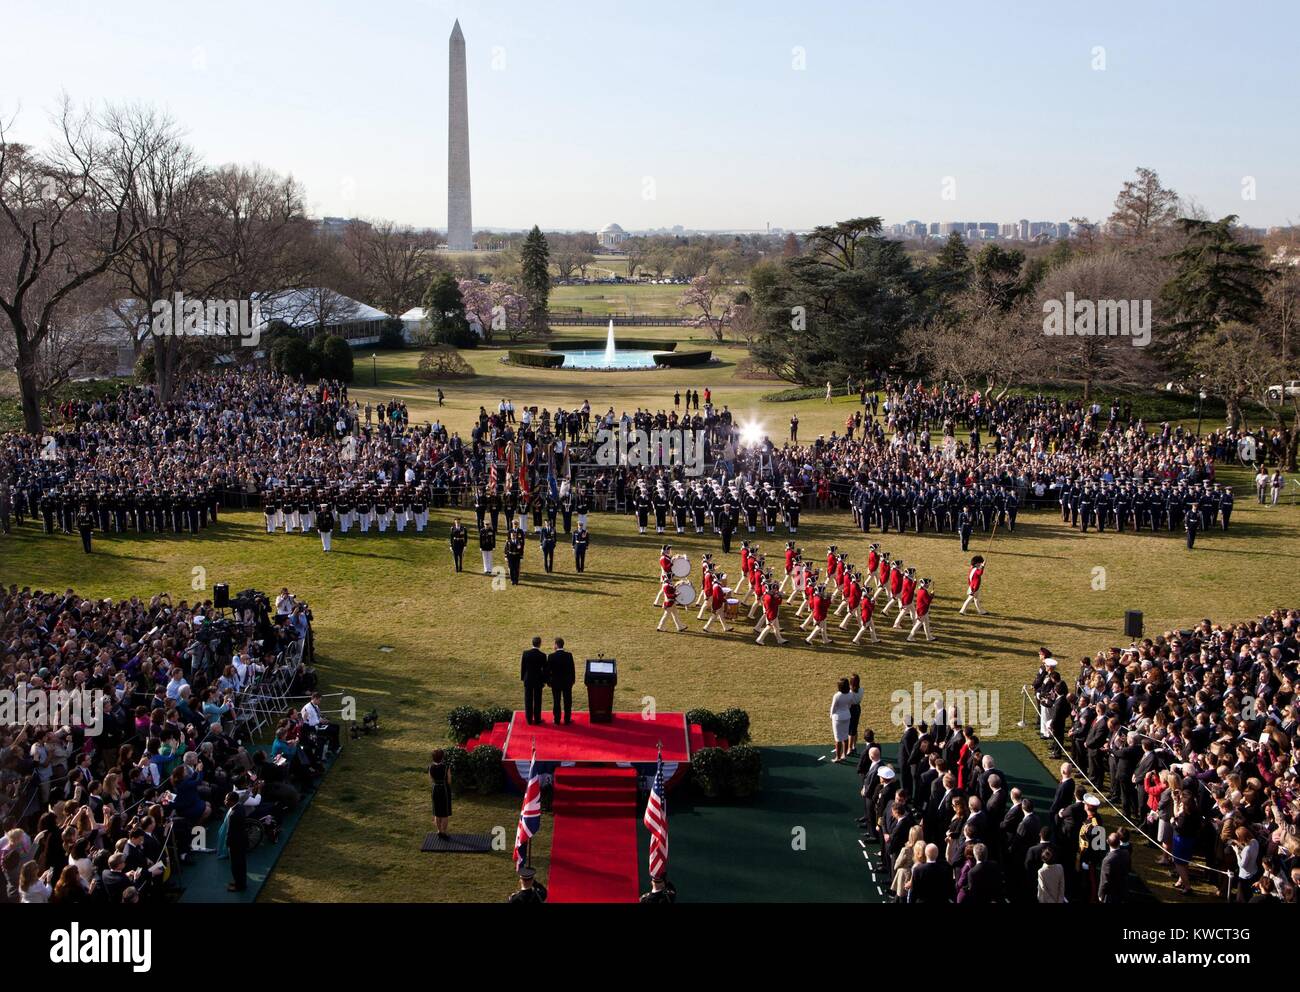 Us-Armee Fife und Drum Corps während der Begrüßungszeremonie auf dem Südrasen, White House. Zeremonie war für Premierminister David Cameron, die Stände mit Präsident Barack Obama auf dem roten Teppich. März 14, 2012 (BSLOC 2015 3 210) Stockfoto